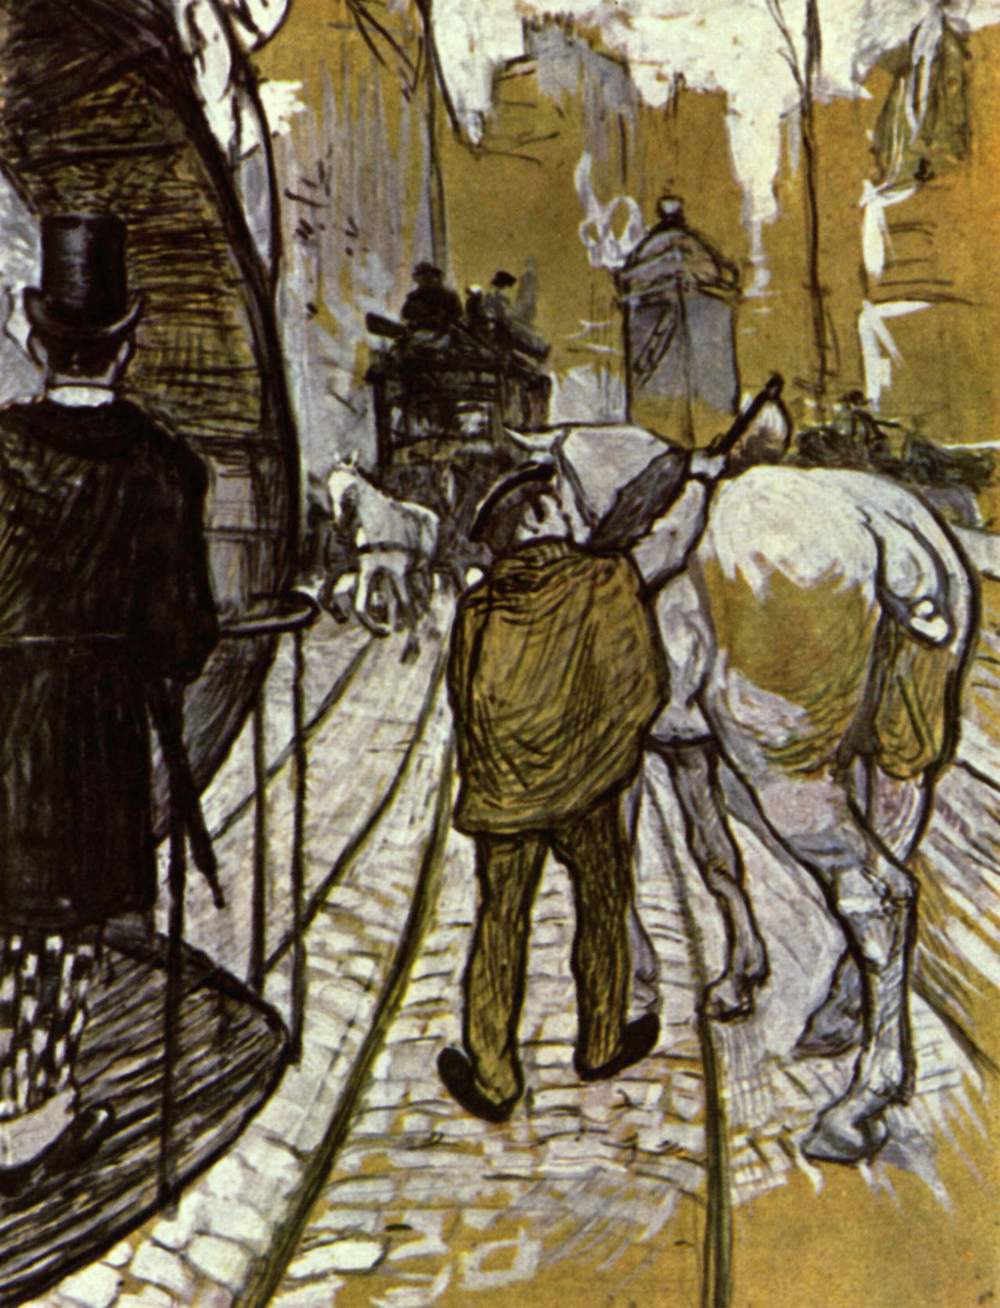 La compañía de autobuses costeros by Henri de Toulouse-Lautrec - 1888 Colección privada